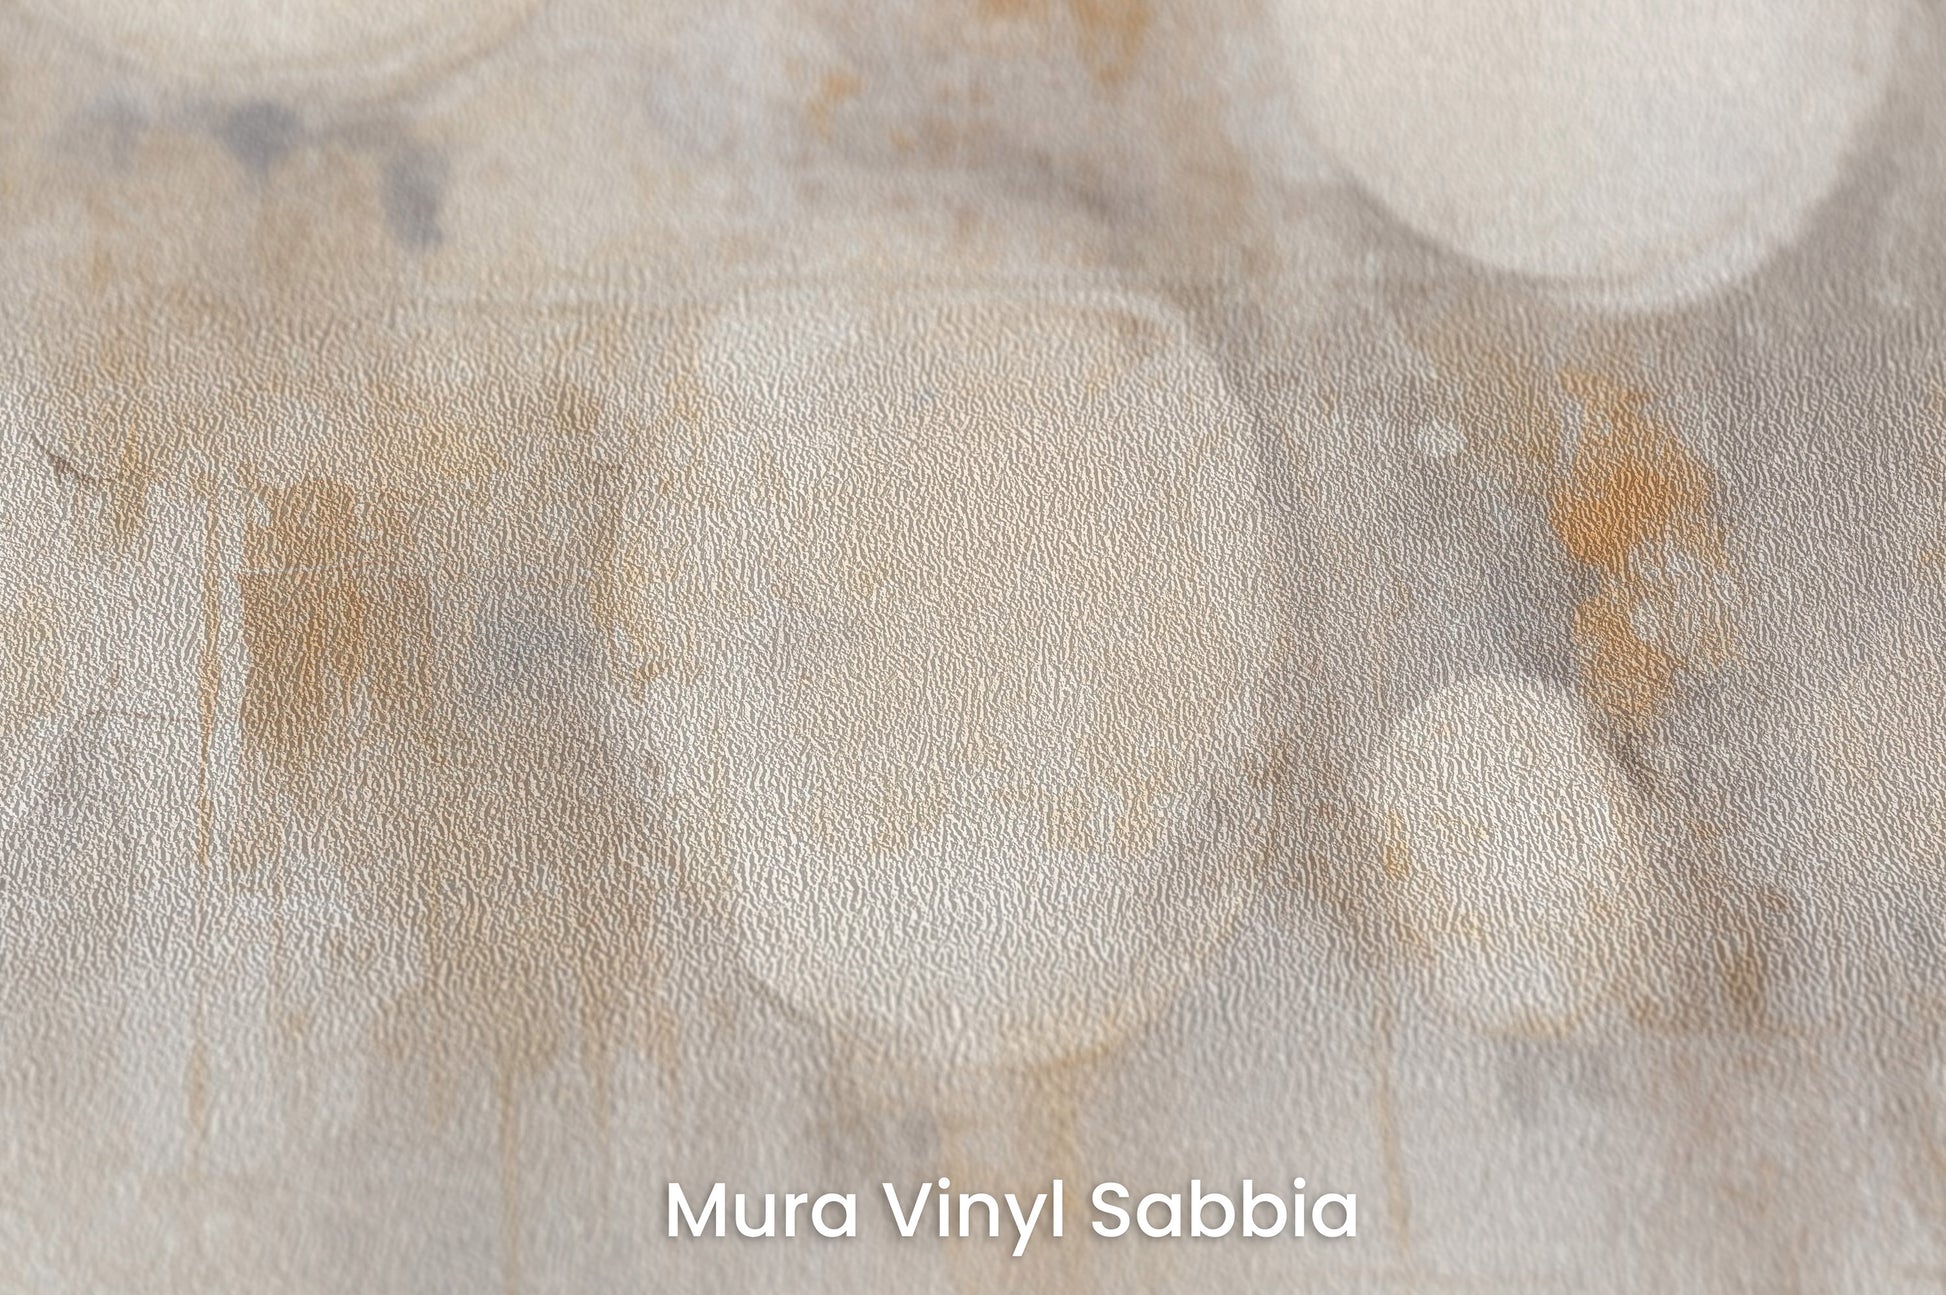 Zbliżenie na artystyczną fototapetę o nazwie LUMINOUS MOONSCAPE ARRAY na podłożu Mura Vinyl Sabbia struktura grubego ziarna piasku.